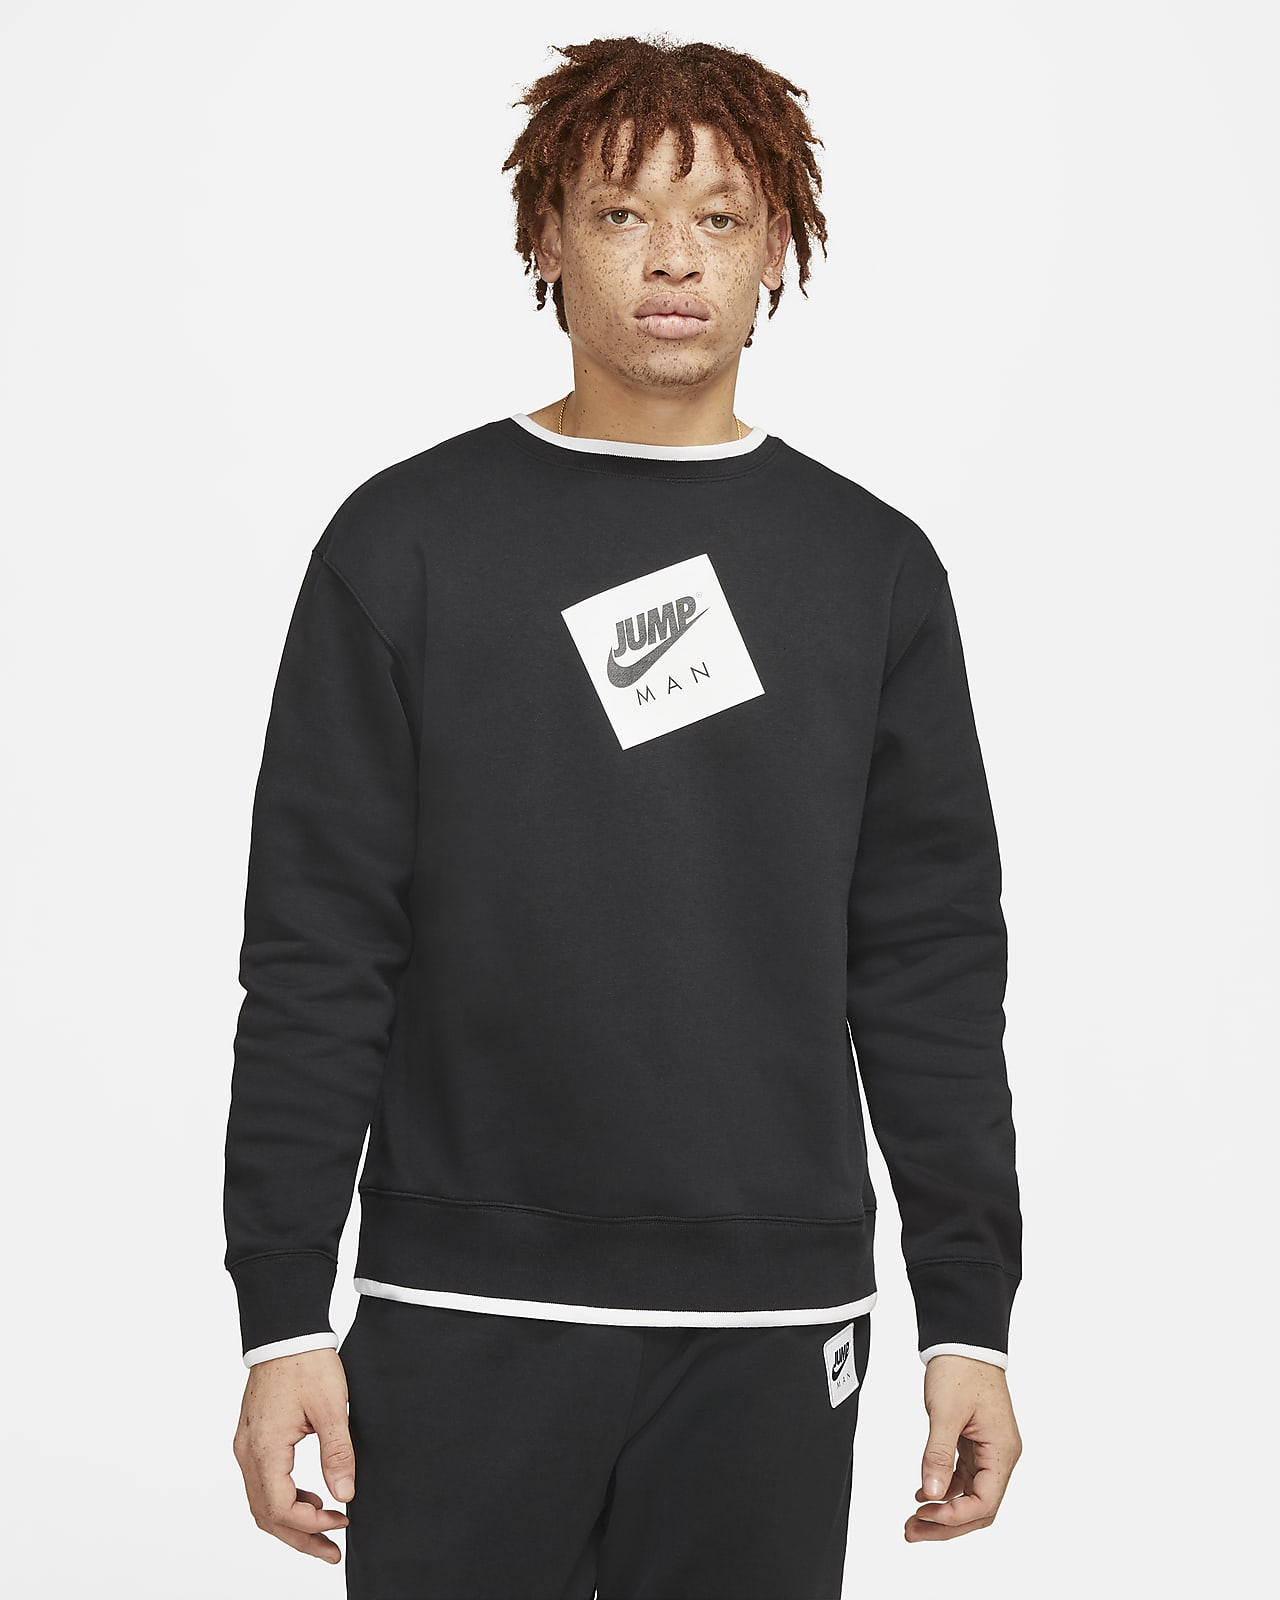 Fleece Crew Sweatshirt. Nike NL